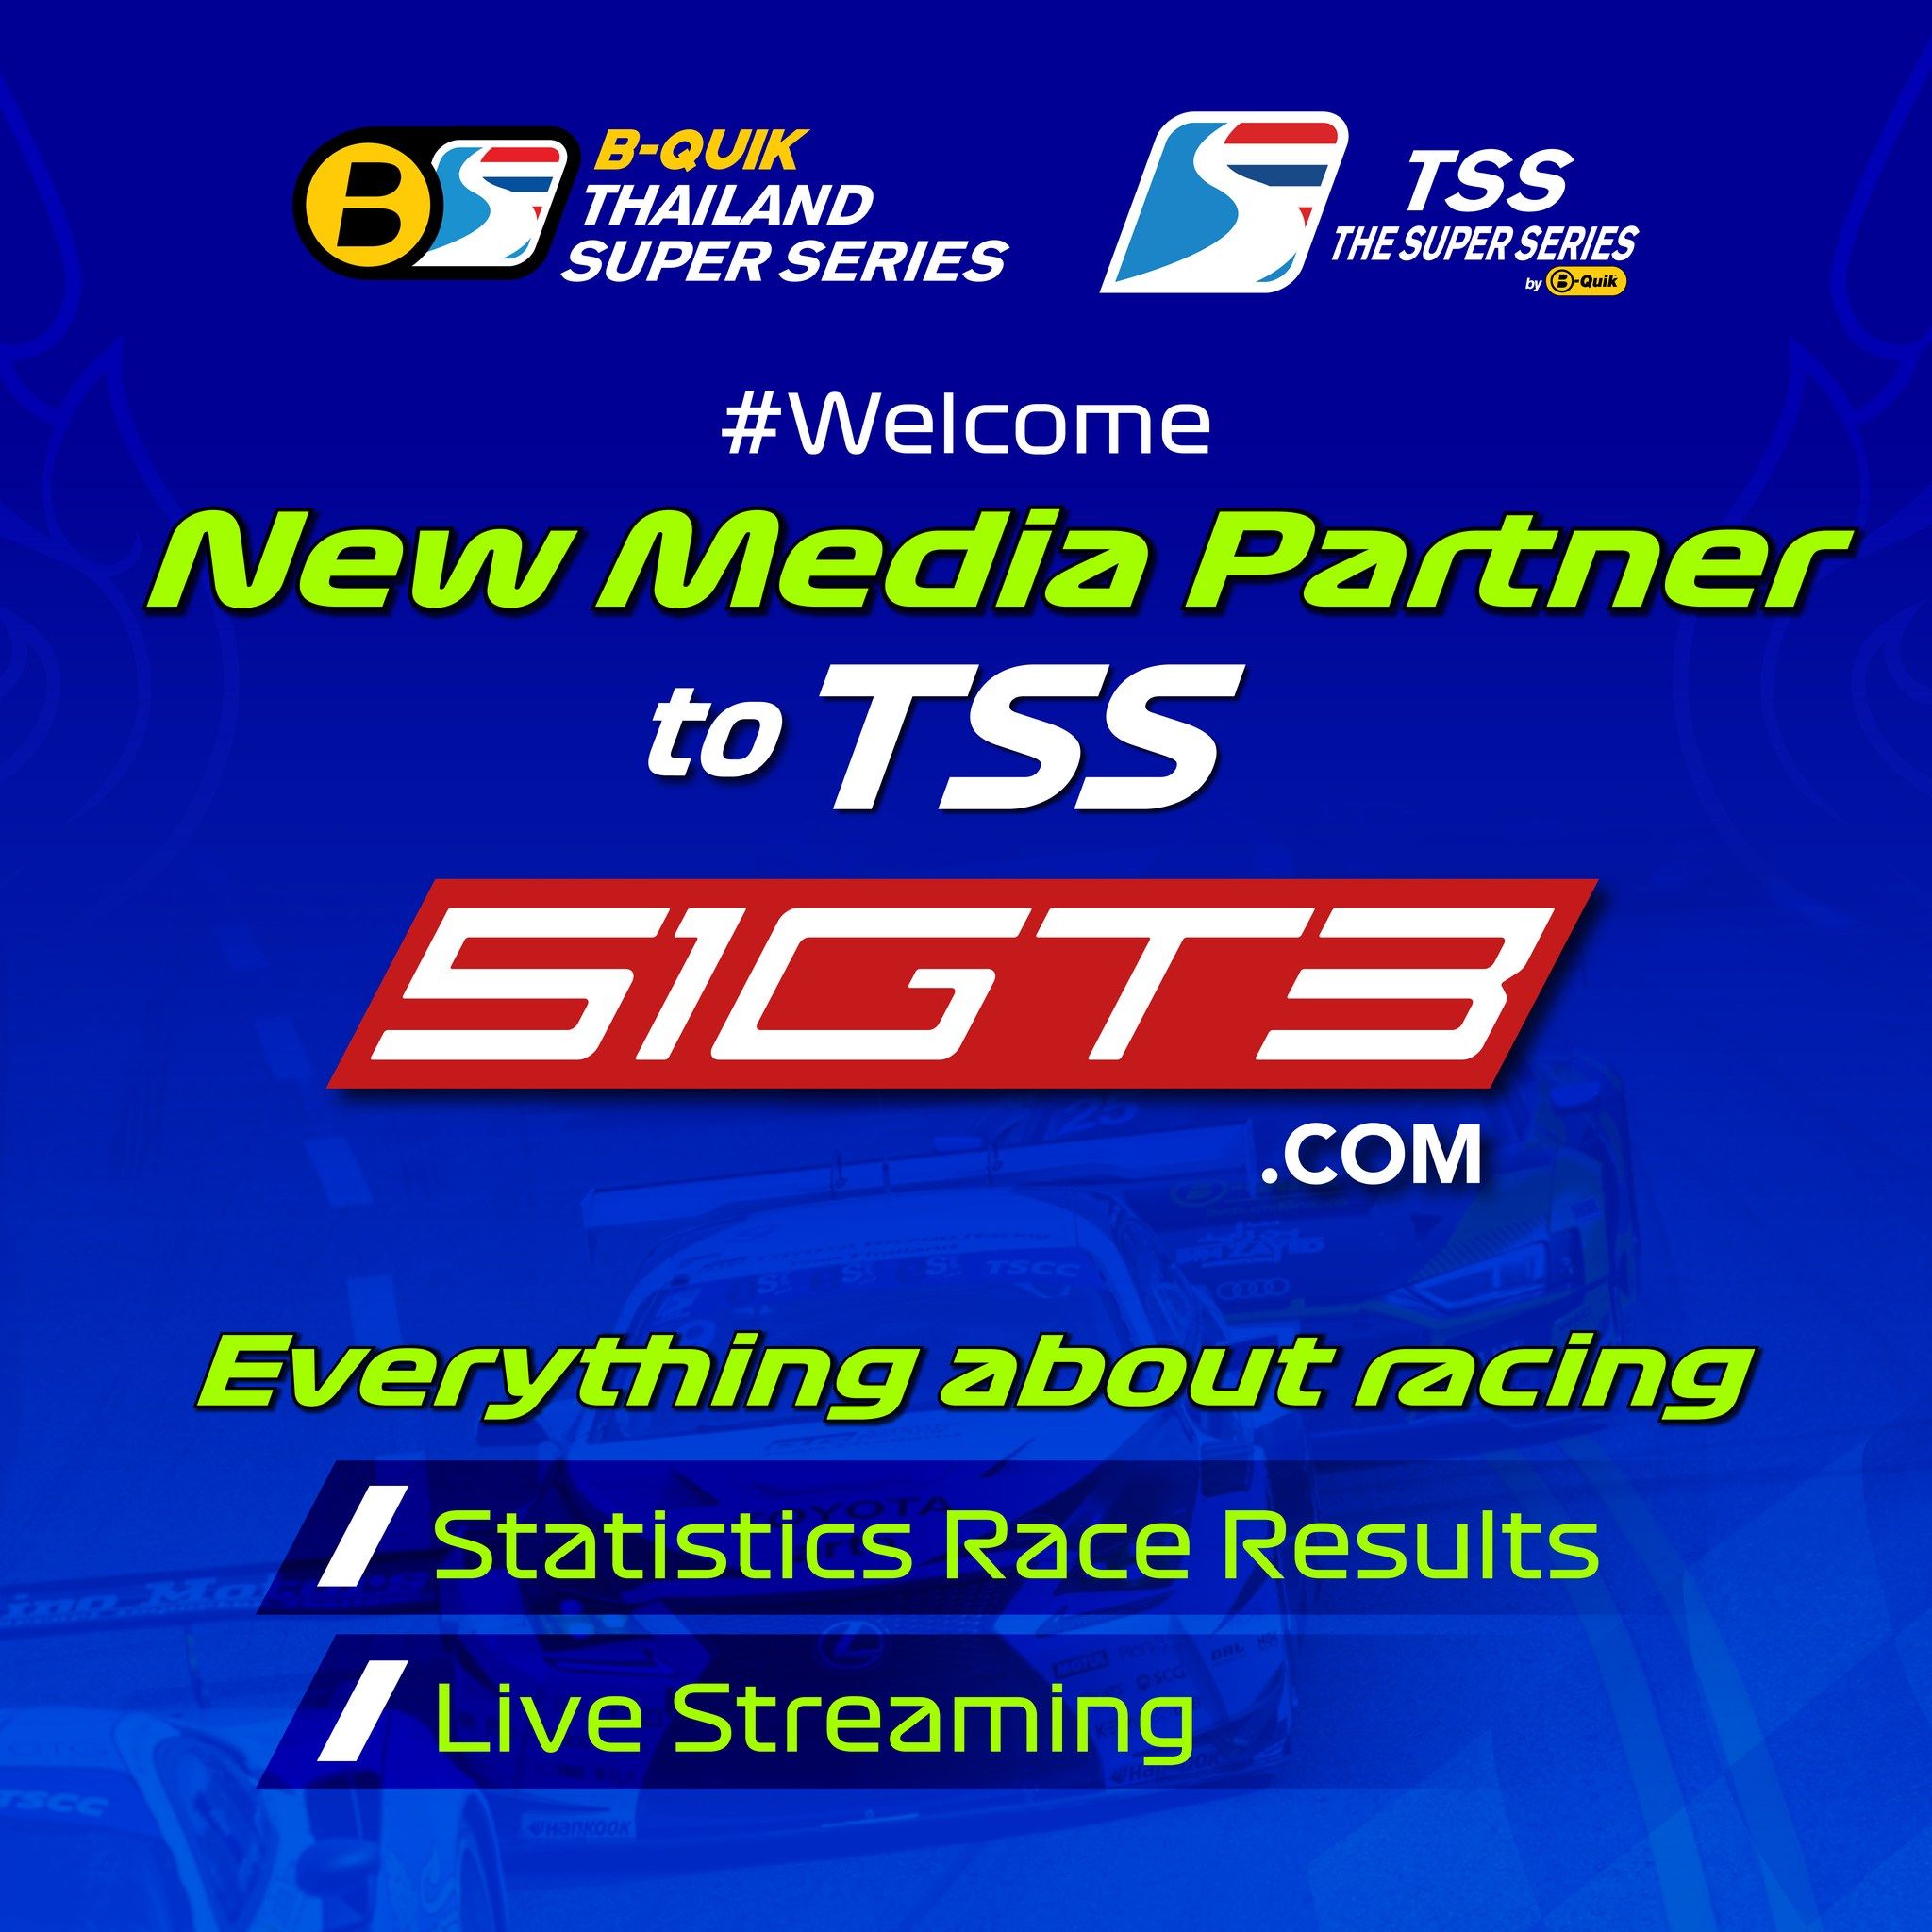 Bem-vindo ao novo parceiro de mídia do TSS - 51GT3.com